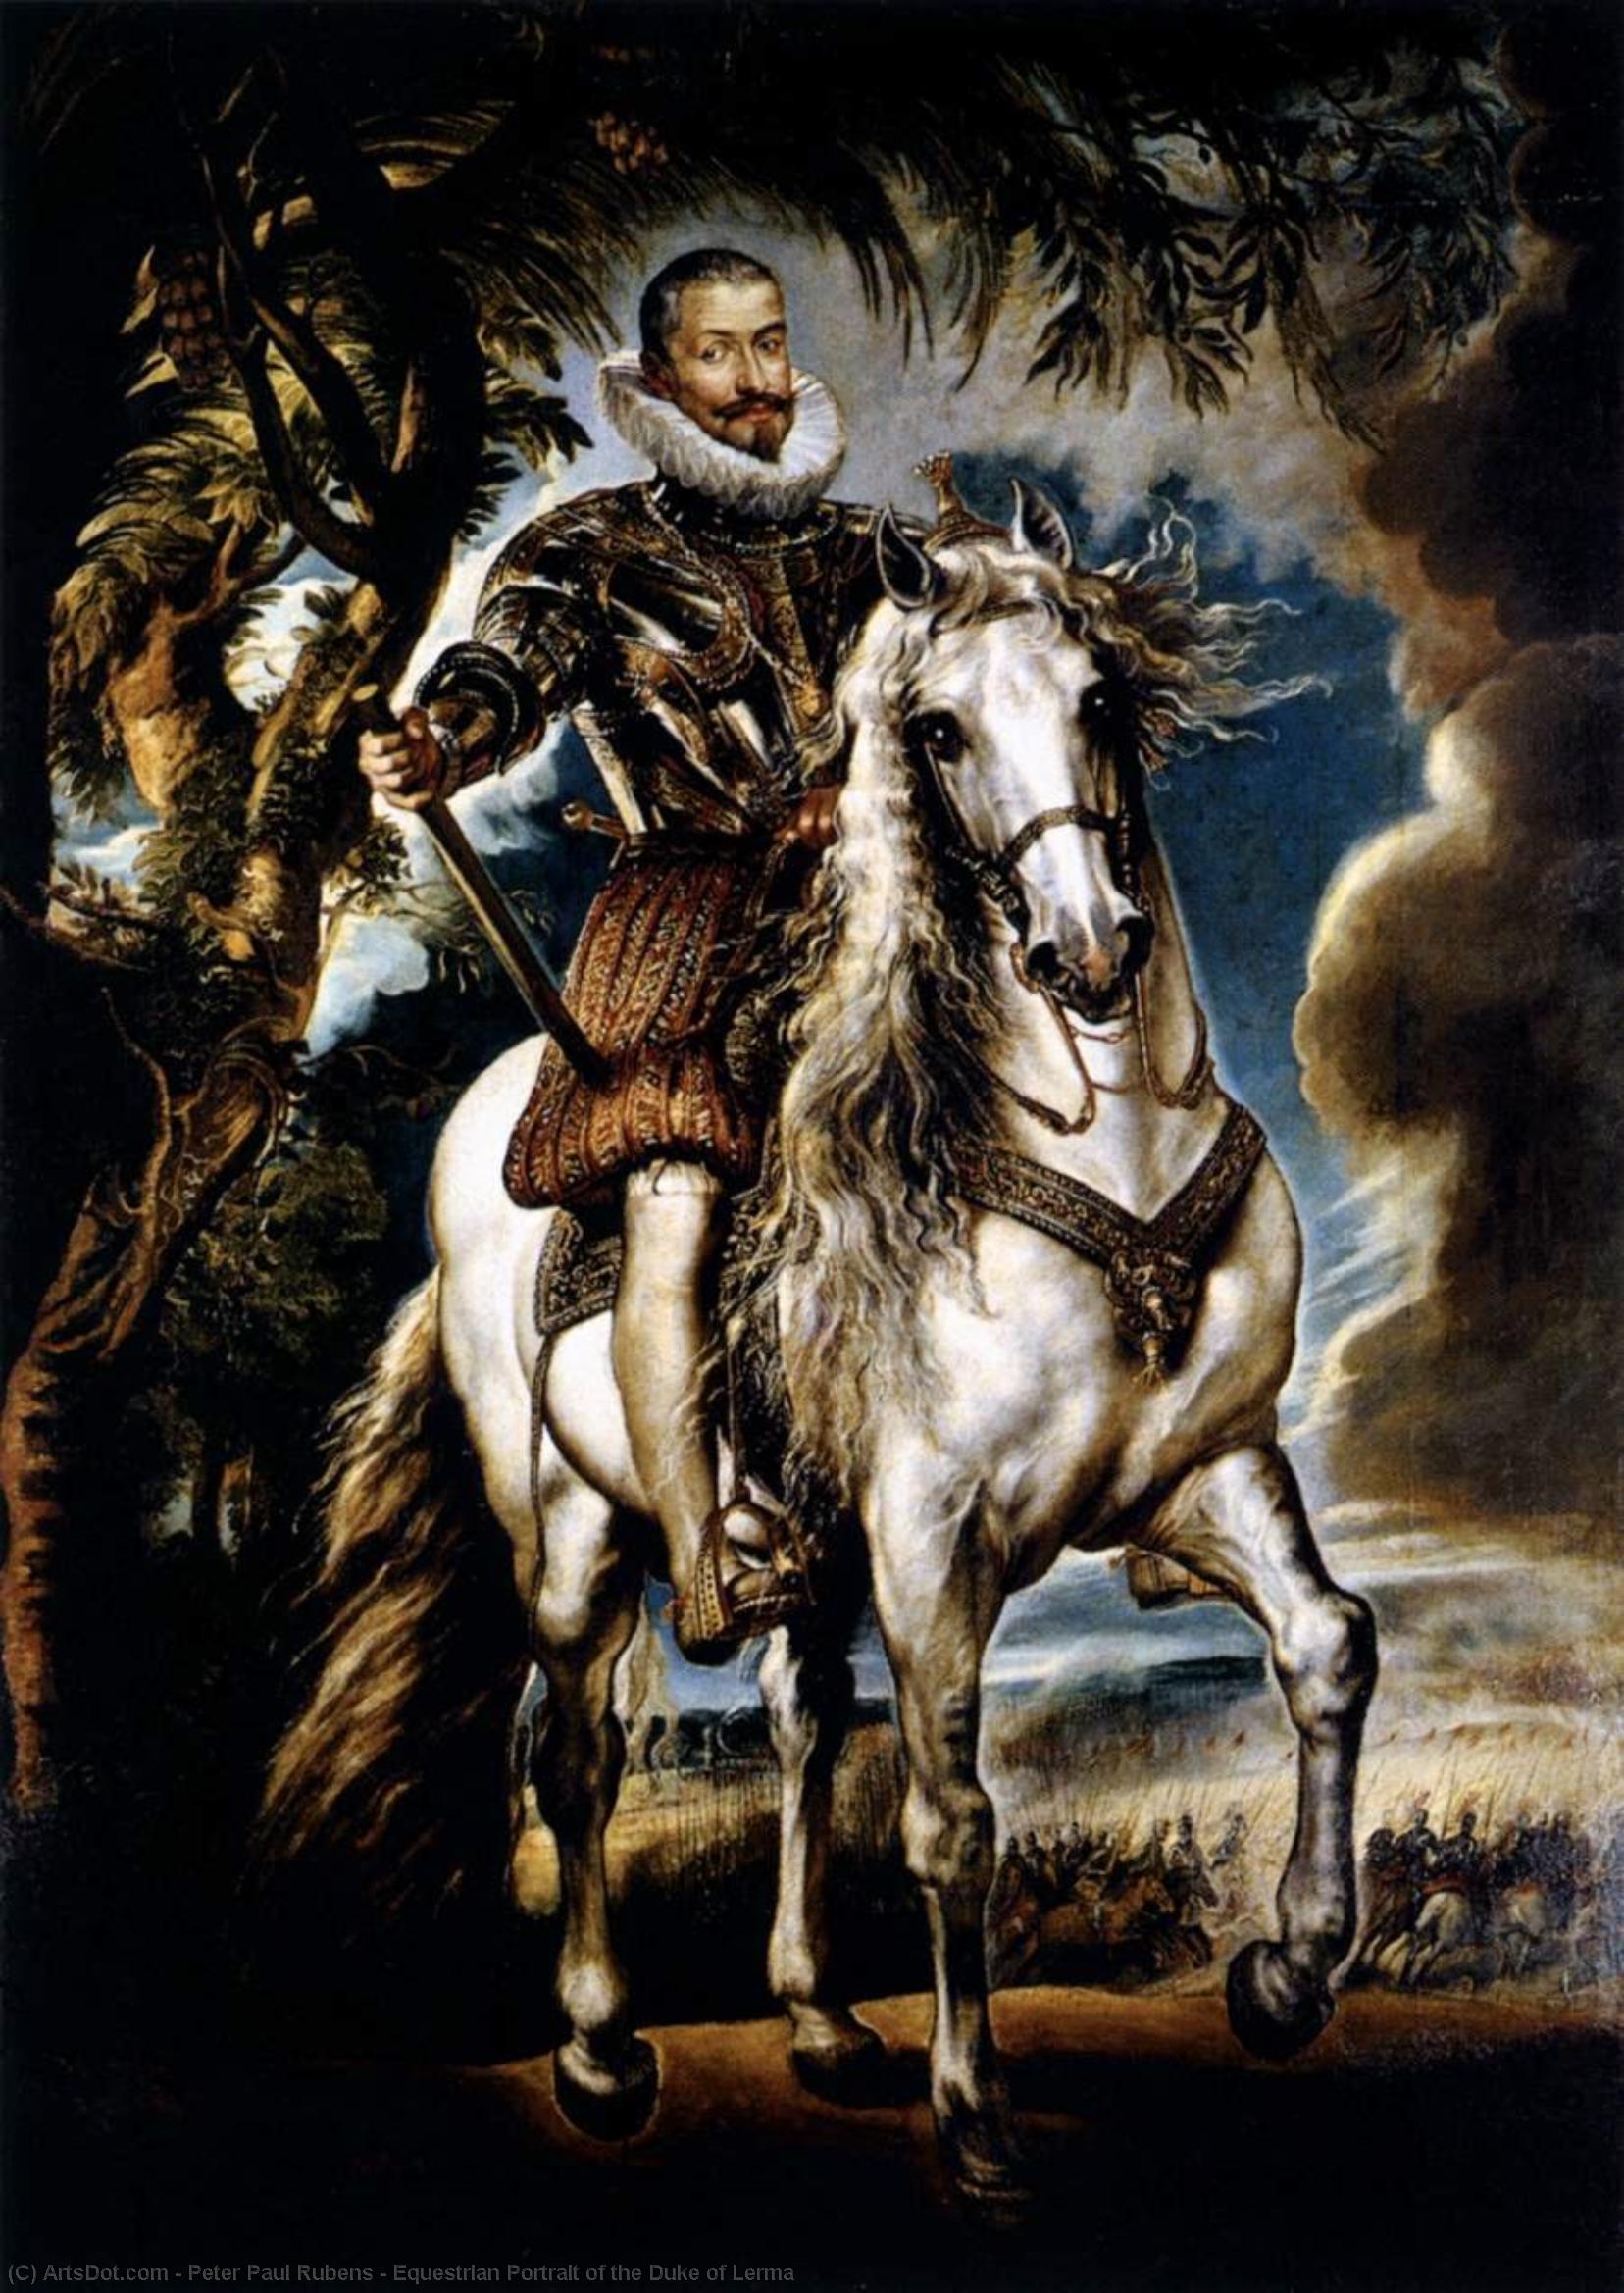 WikiOO.org - Enciclopédia das Belas Artes - Pintura, Arte por Peter Paul Rubens - Equestrian Portrait of the Duke of Lerma